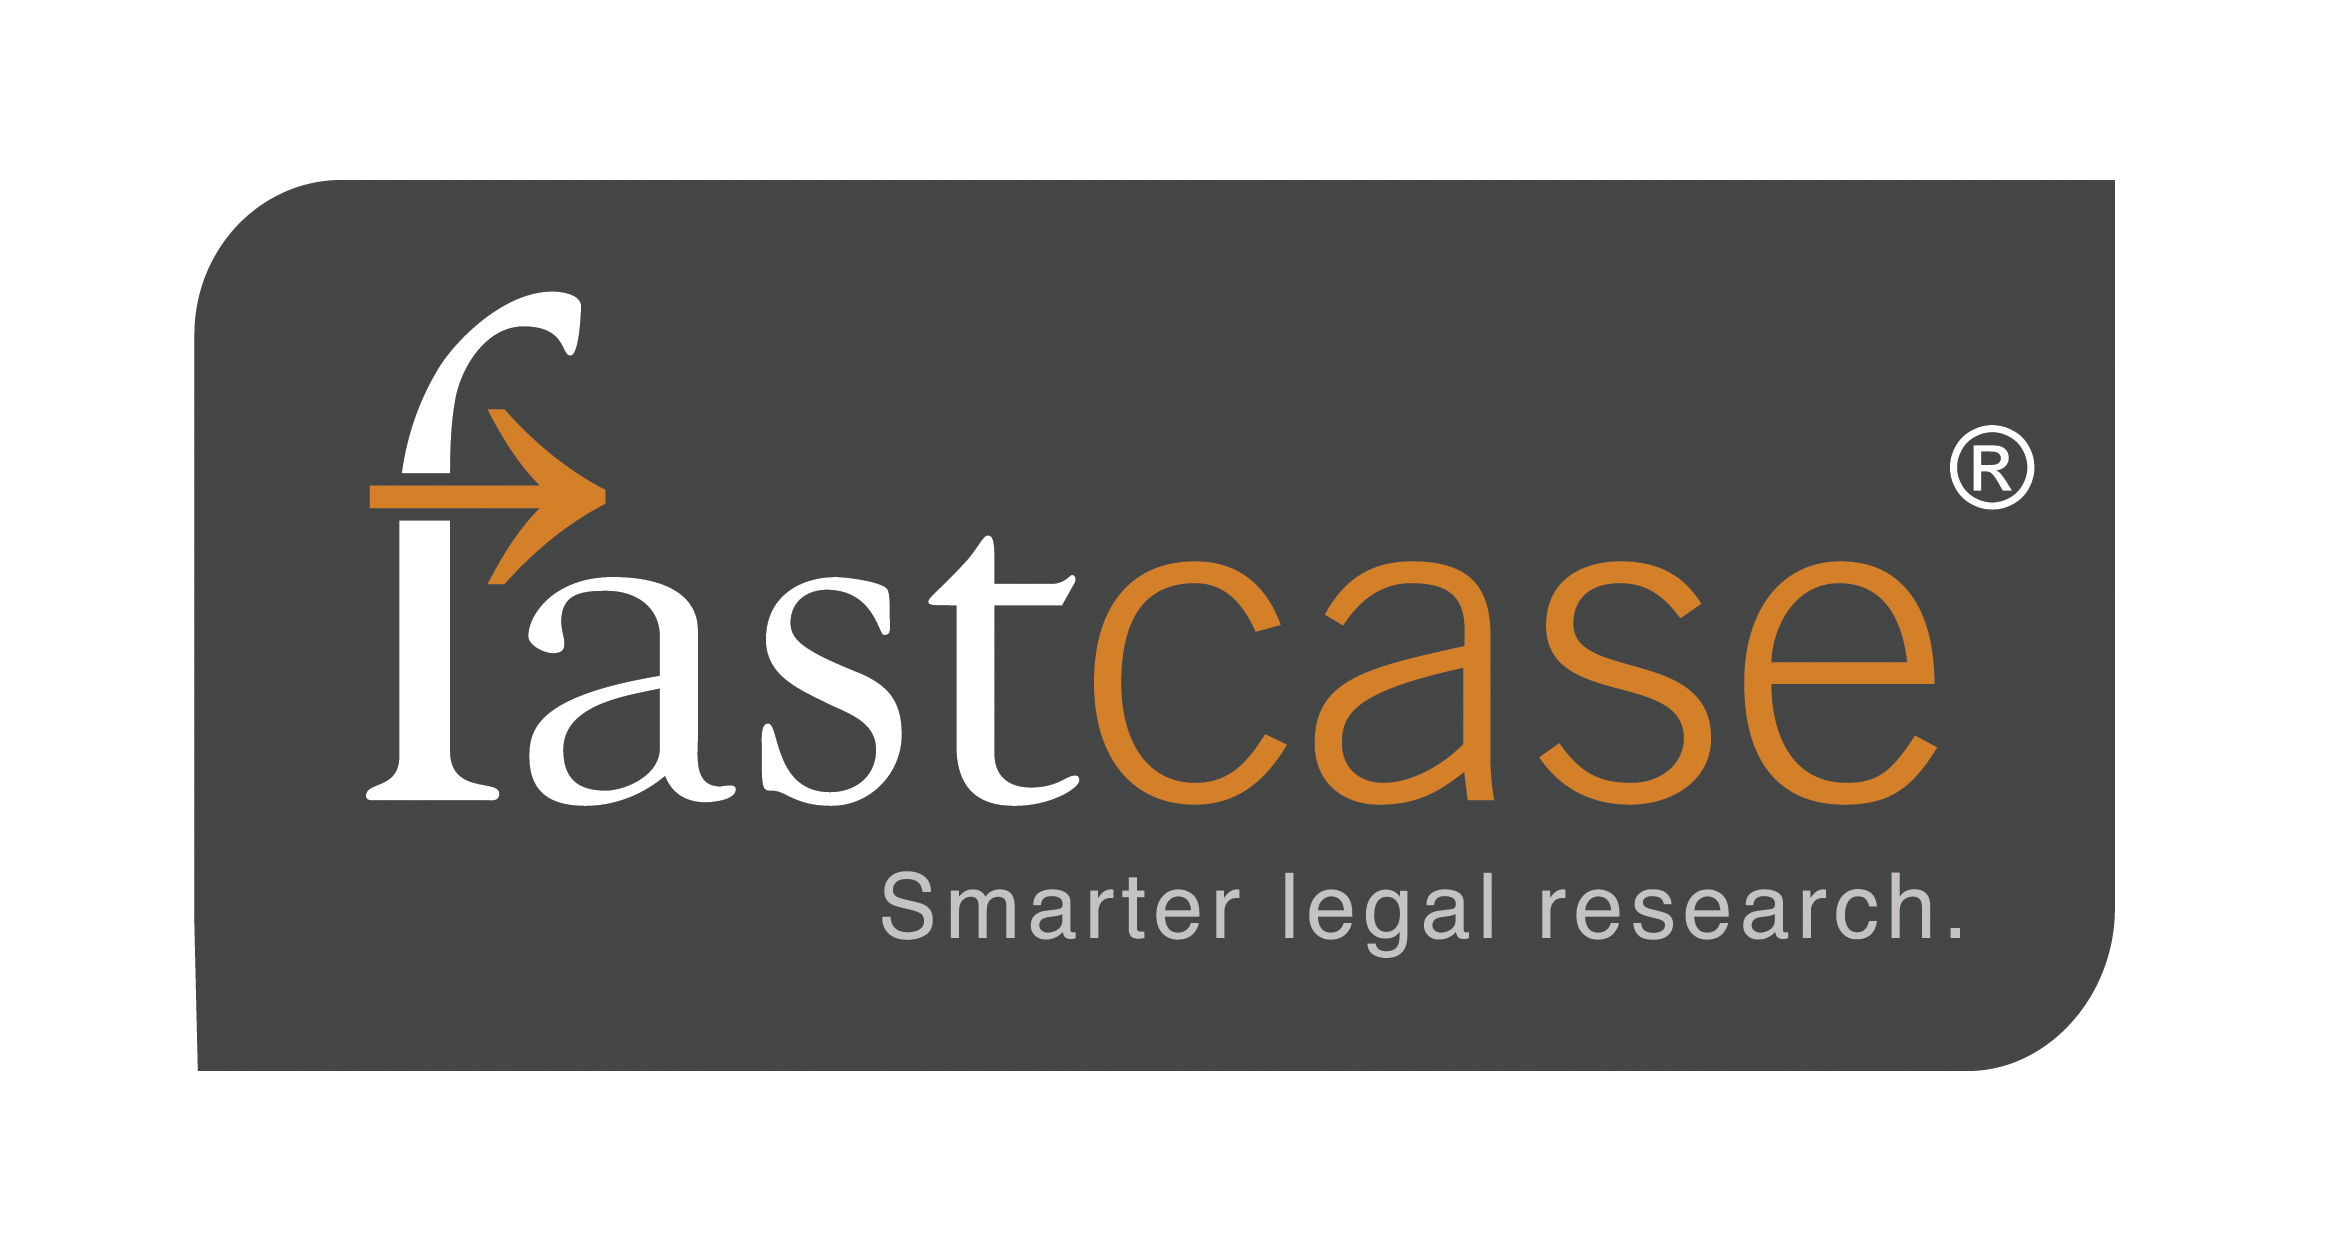 Fastcase logo